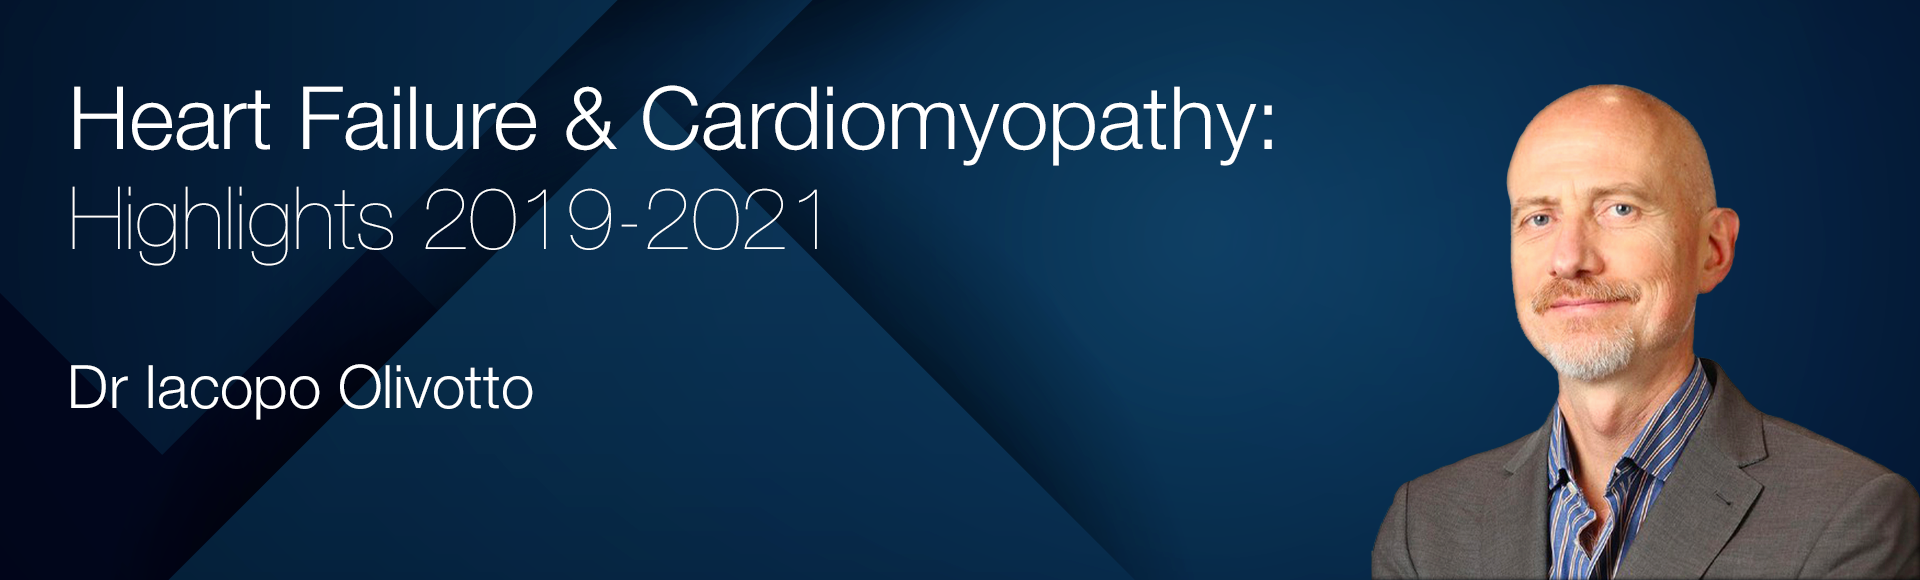 Heart Failure & Cardiomyopathy: Highlights 2019-2021